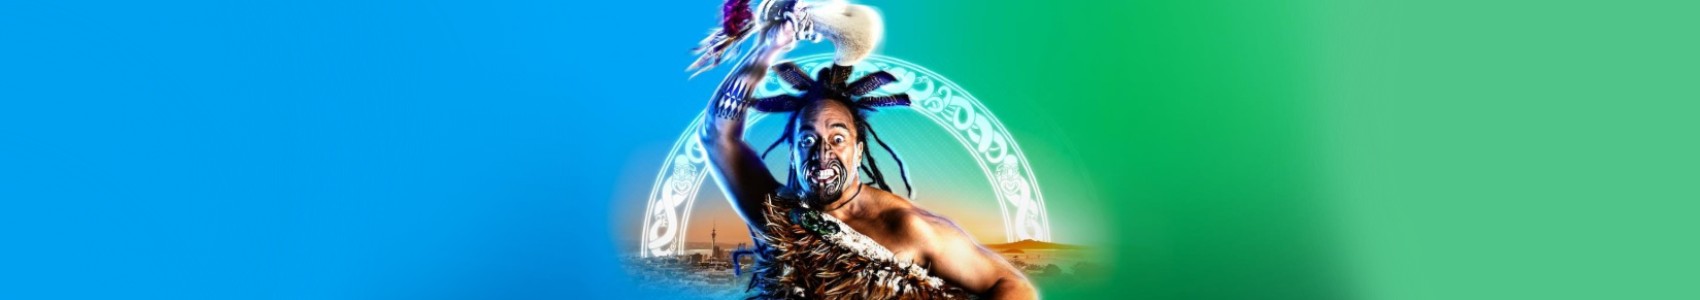 Haka is here! Tāmaki Makaurau prepares to host the ‘Olympics’ of kapa haka, Te Matatini Festival